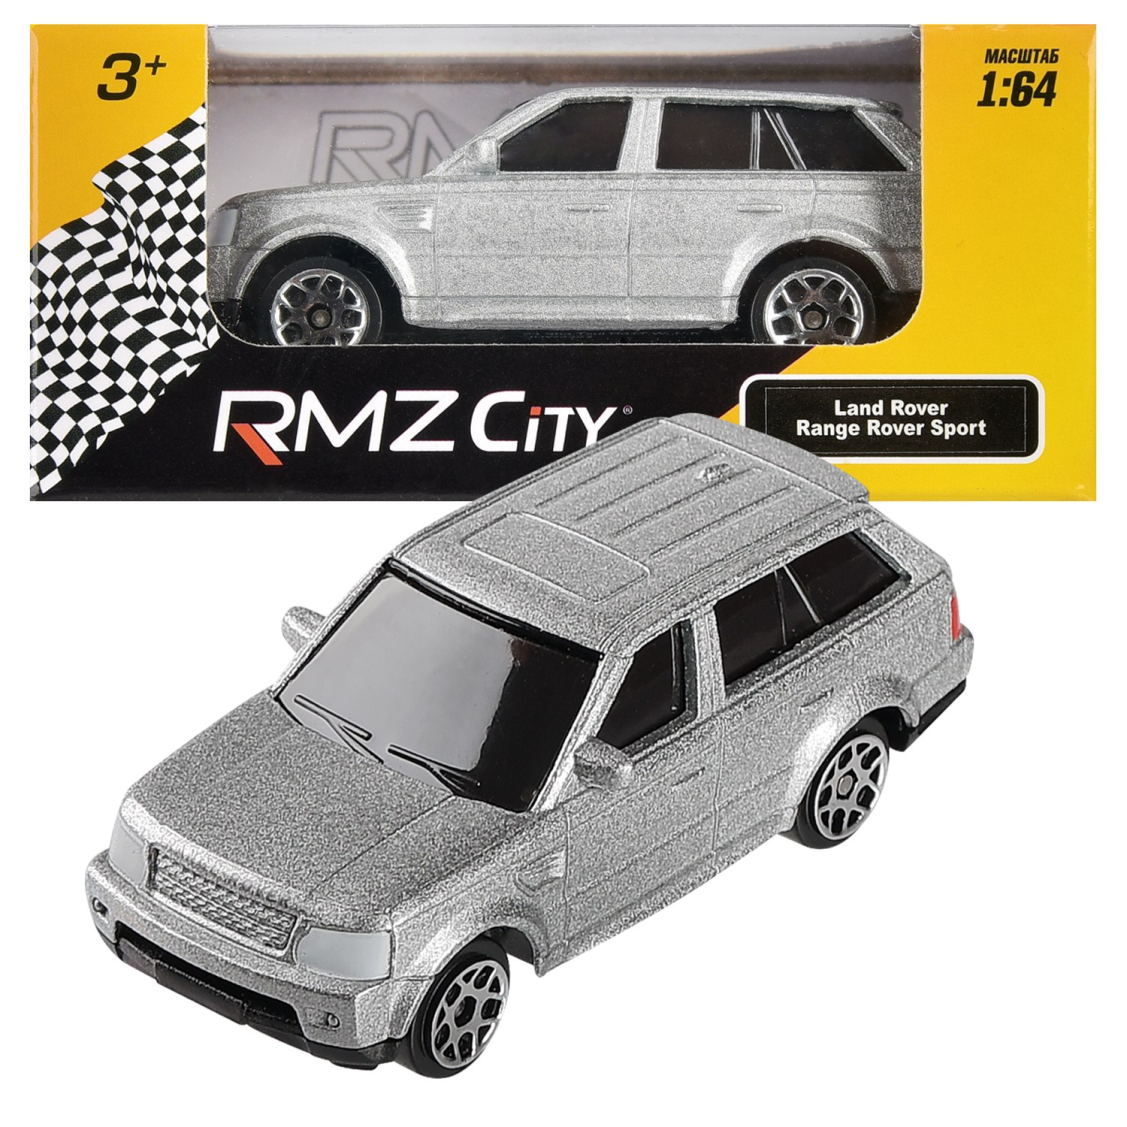 Машинка металлическая Uni-Fortune RMZ City 1:64 Range Rover Sport, без механизмов, цвет серебристый,